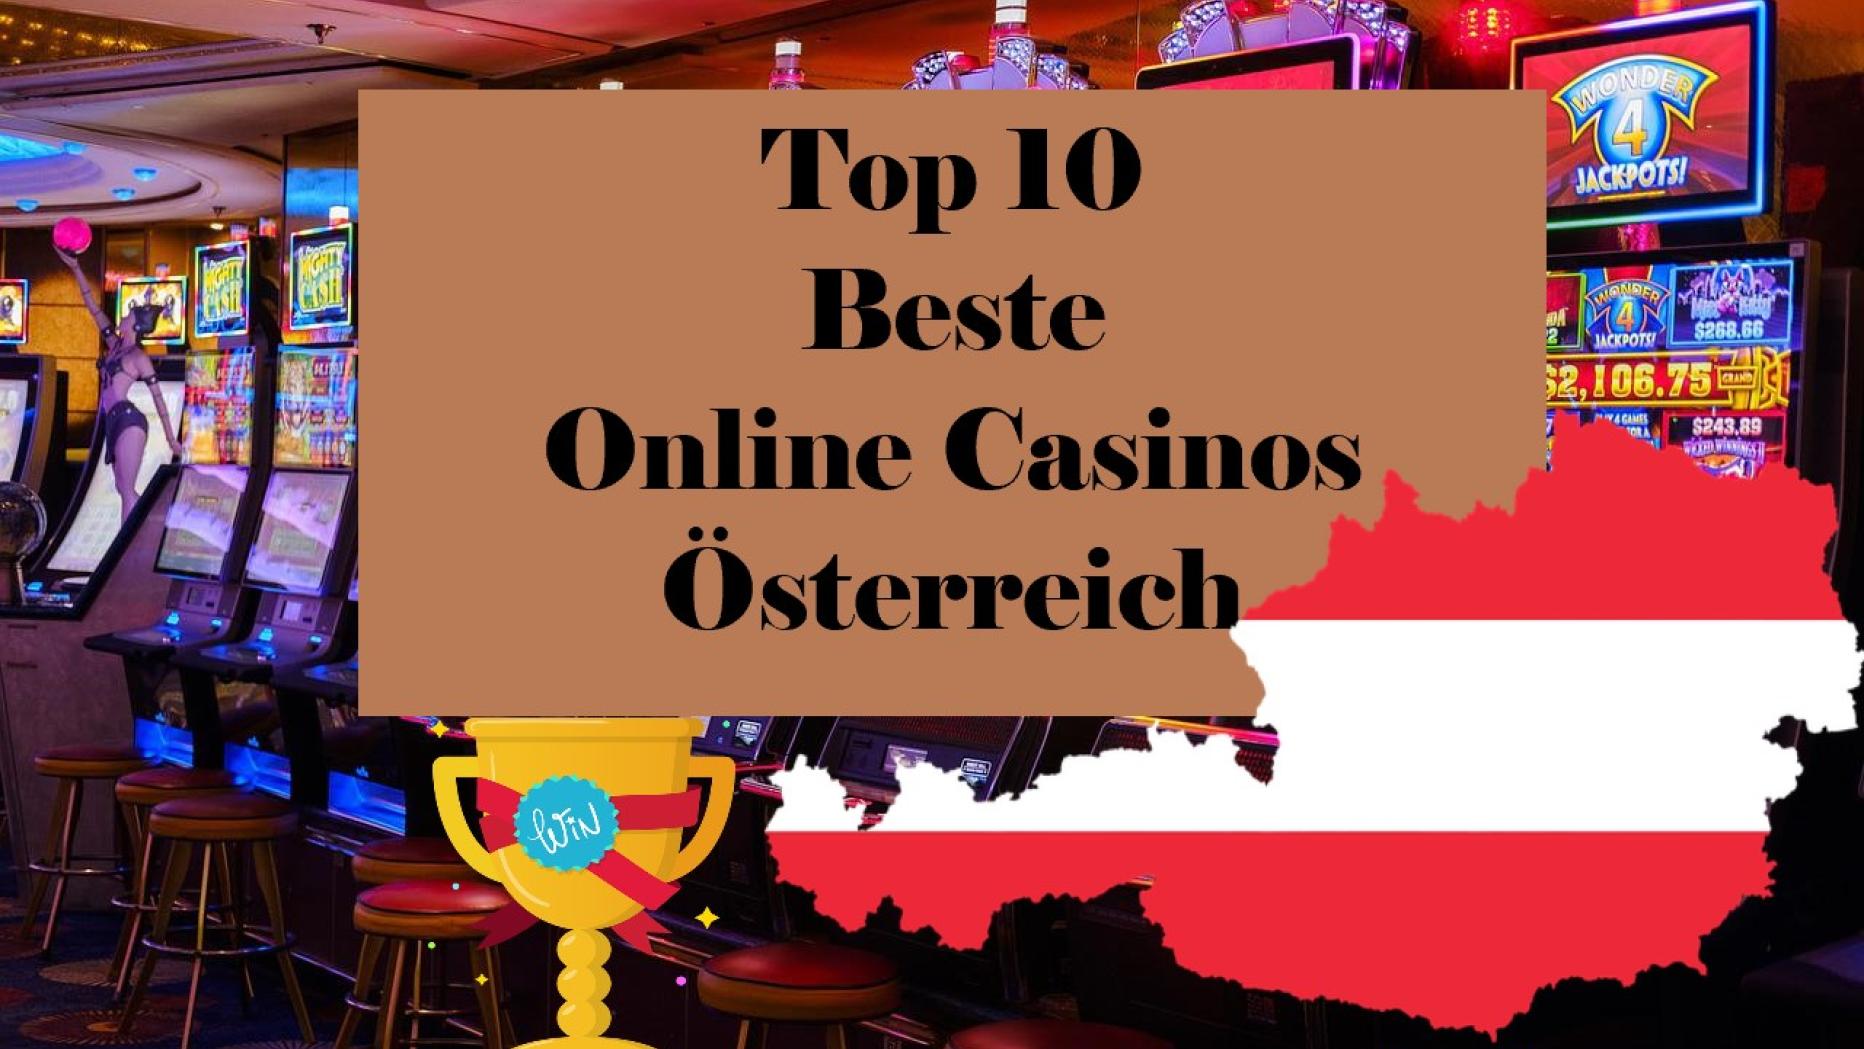 Ist es an der Zeit, mehr über Online Casinos in Österreich zu sprechen?